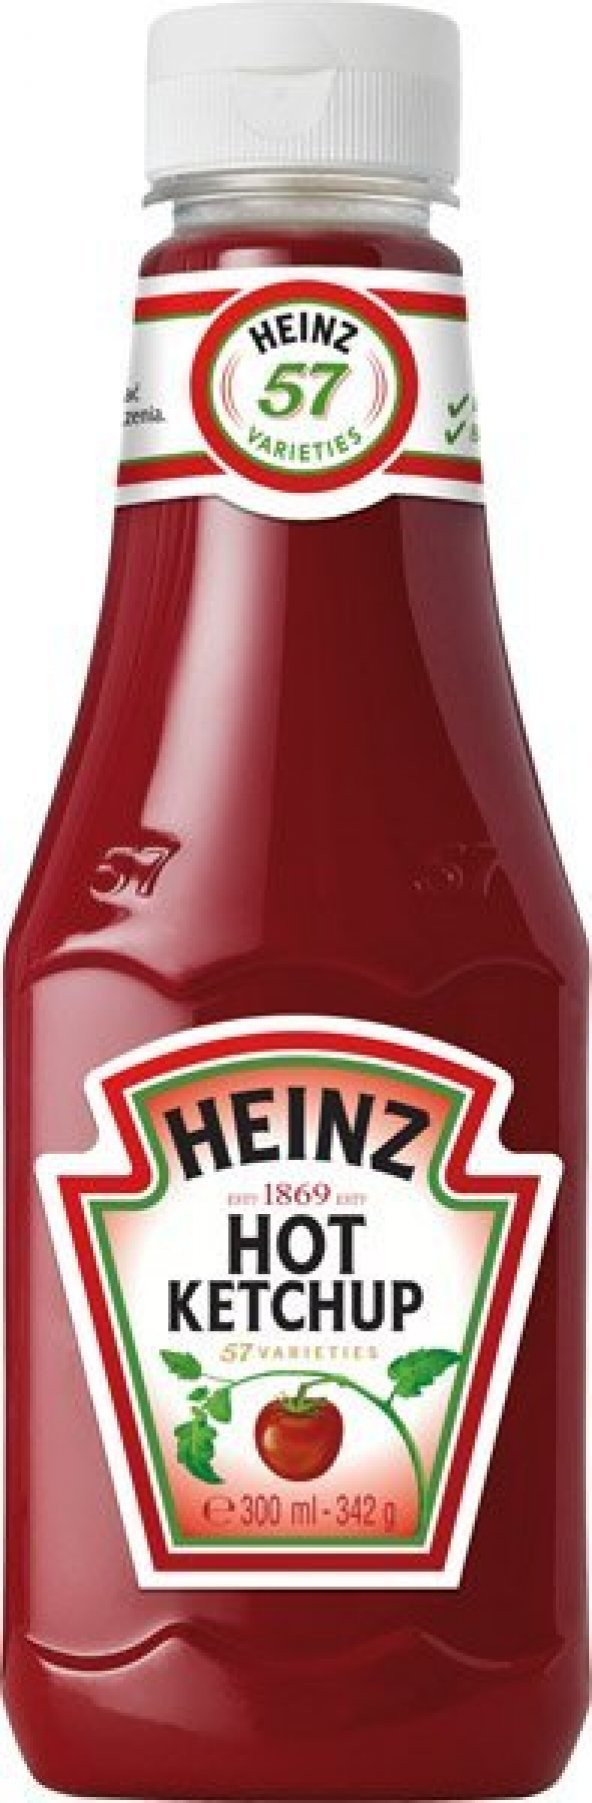 Heinz Acılı Ketçap 300 gr